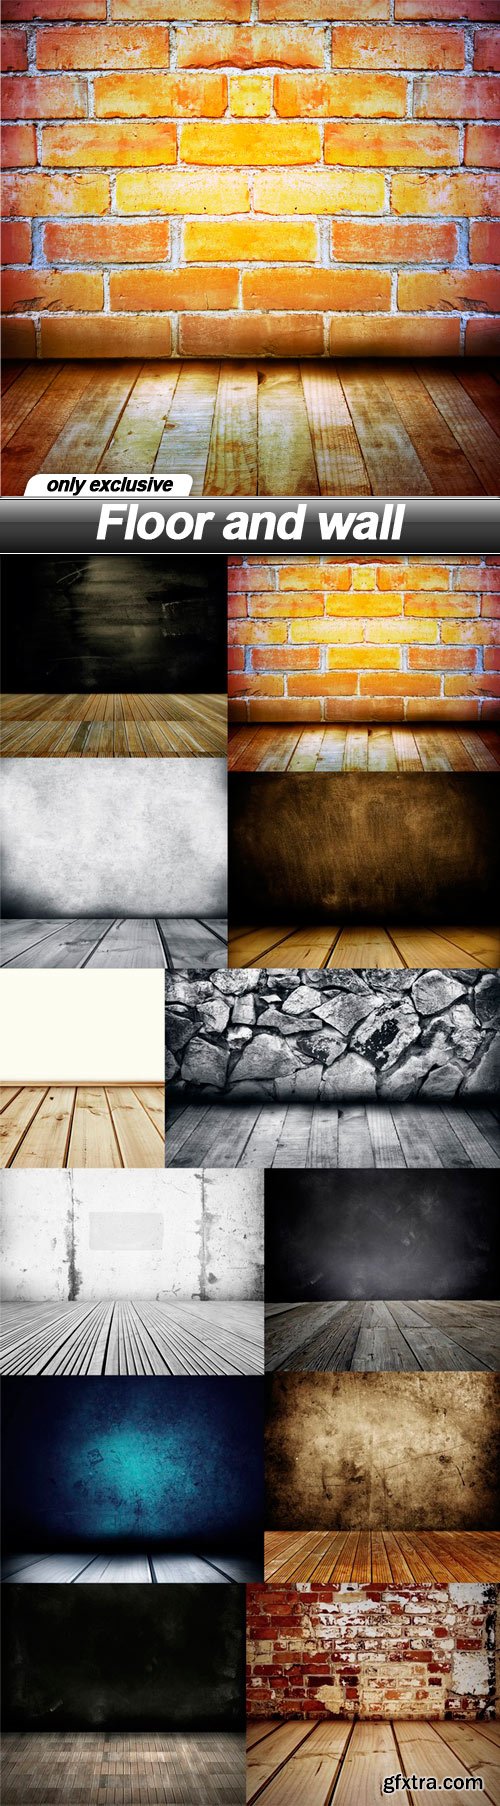 Floor and wall - 12 UHQ JPEG